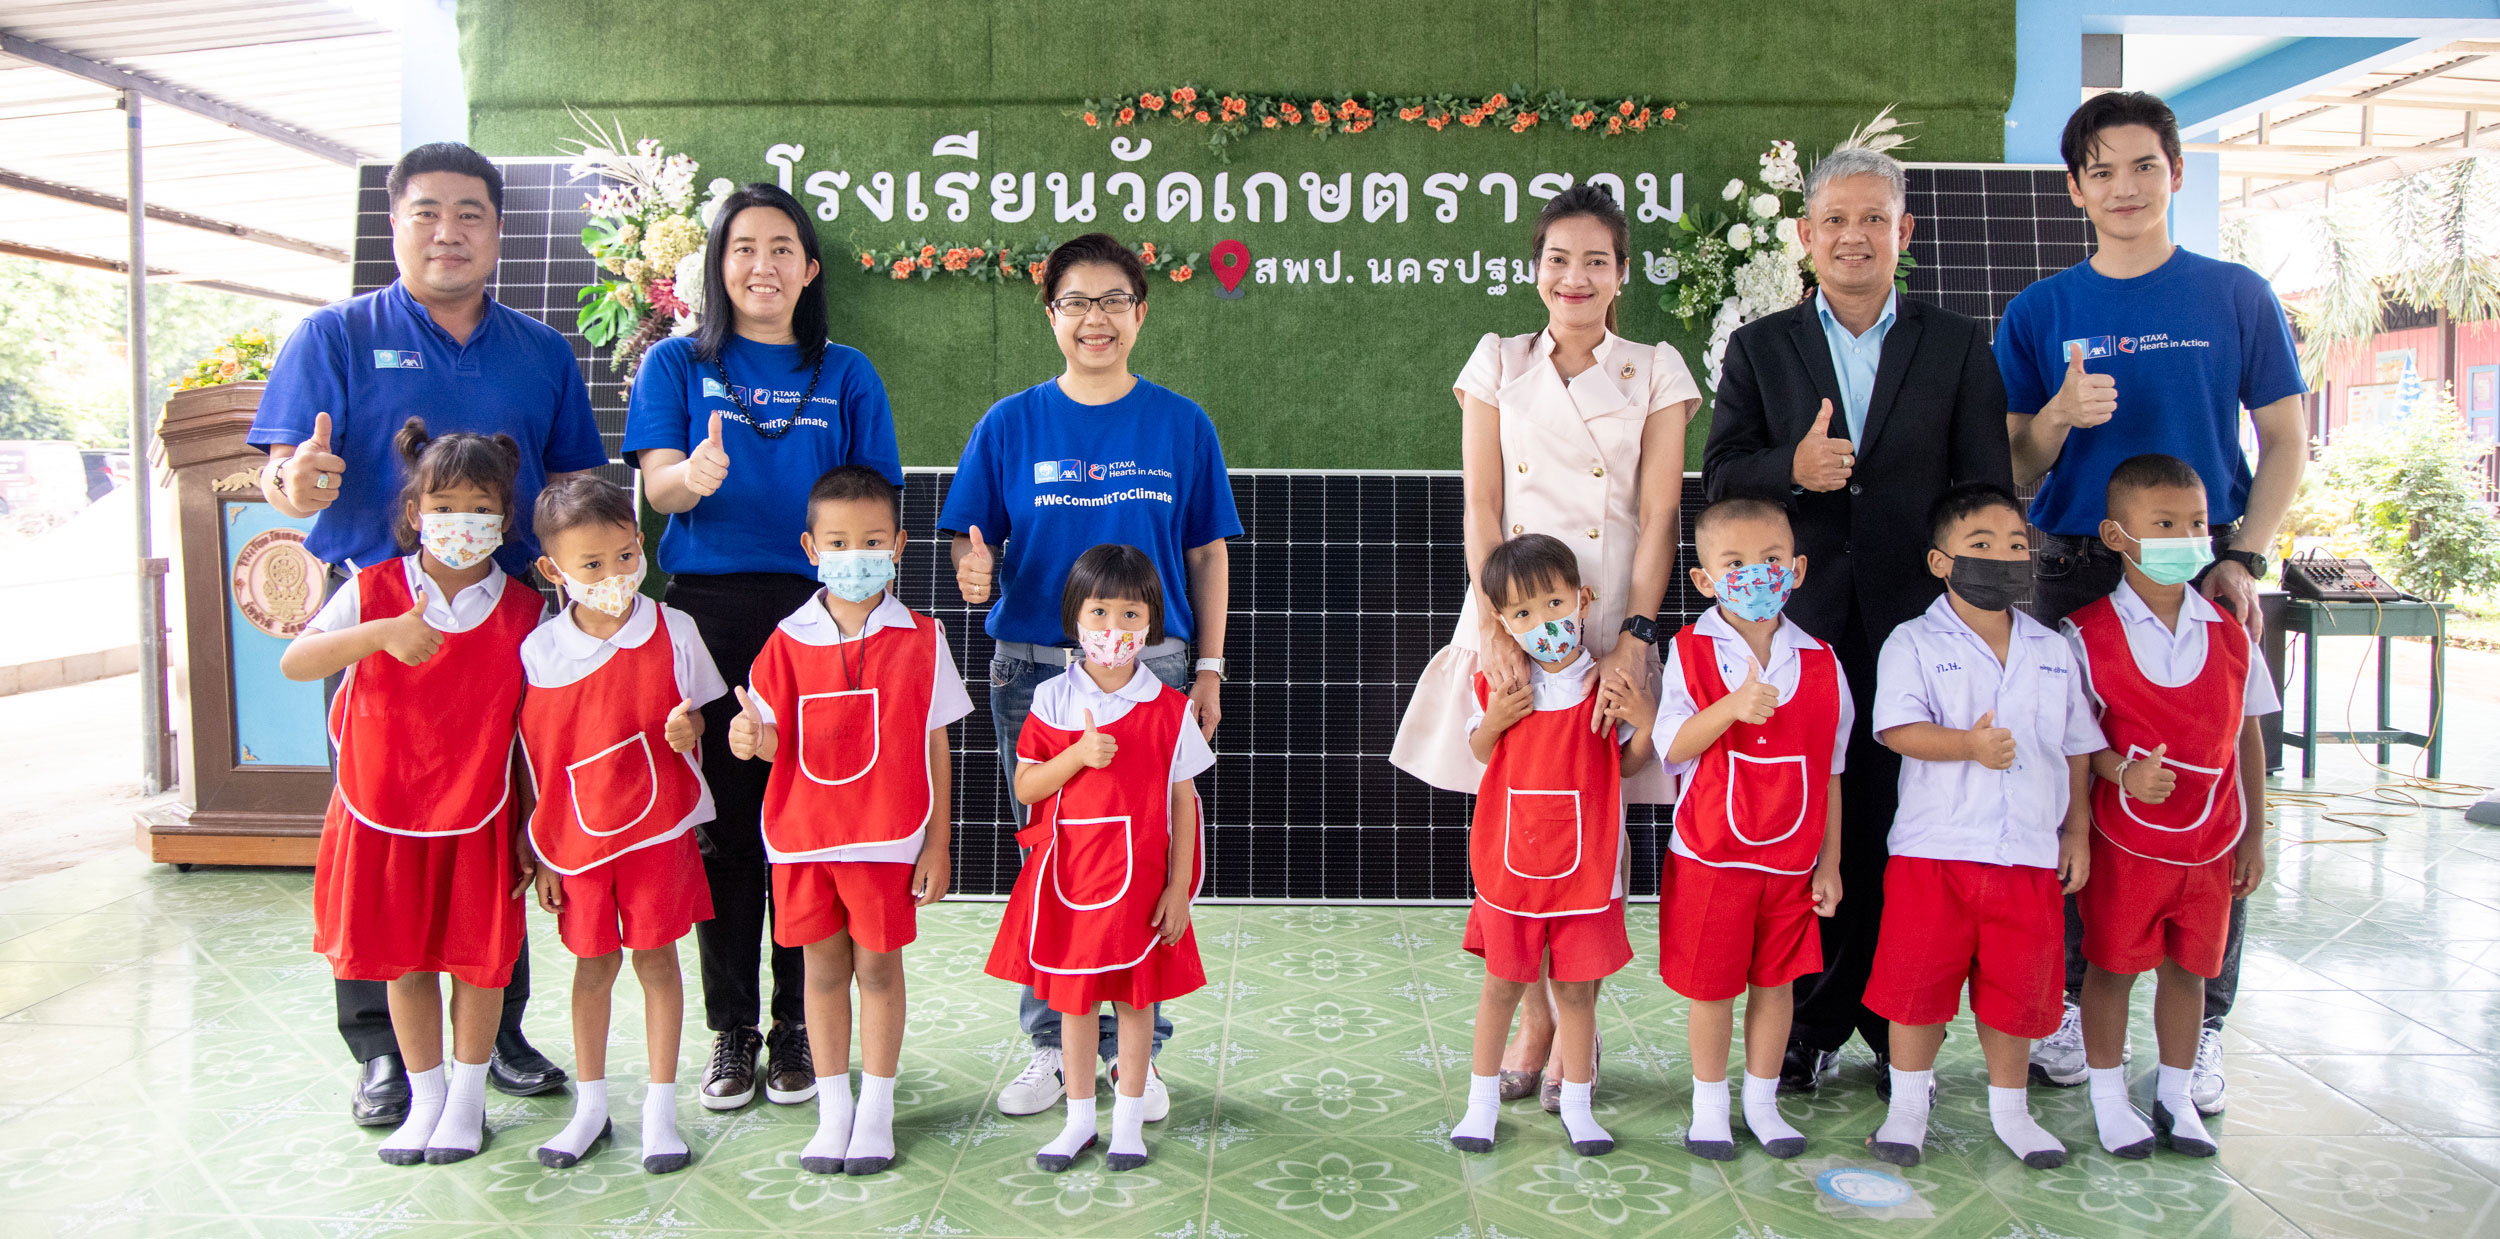 กรุงไทย–แอกซ่า ประกันชีวิต มอบแผงโซล่าเซลล์ ภายใต้กิจกรรม “Live Green Save Green” ให้แก่โรงเรียนเกษตราราม จ.นครปฐม